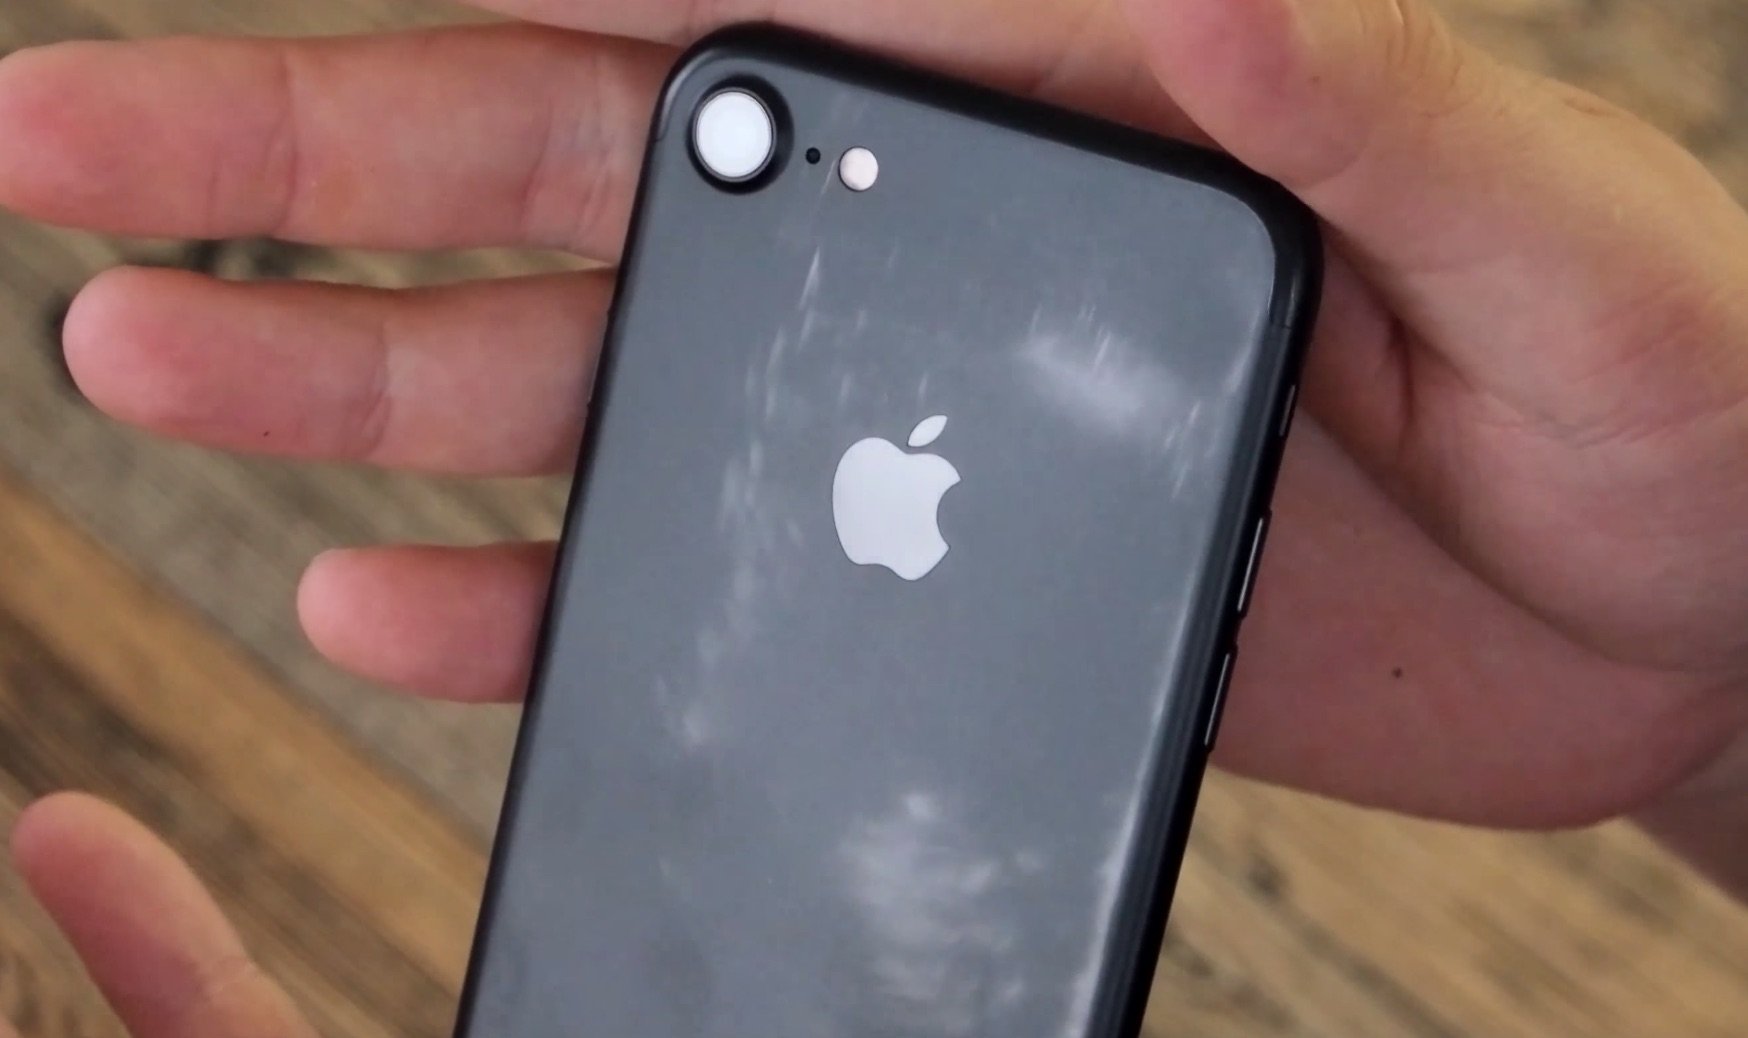 Neue Farbprobleme: schwarzes iPhone 7 verliert Matt-Effekt durch Nutzung? 1